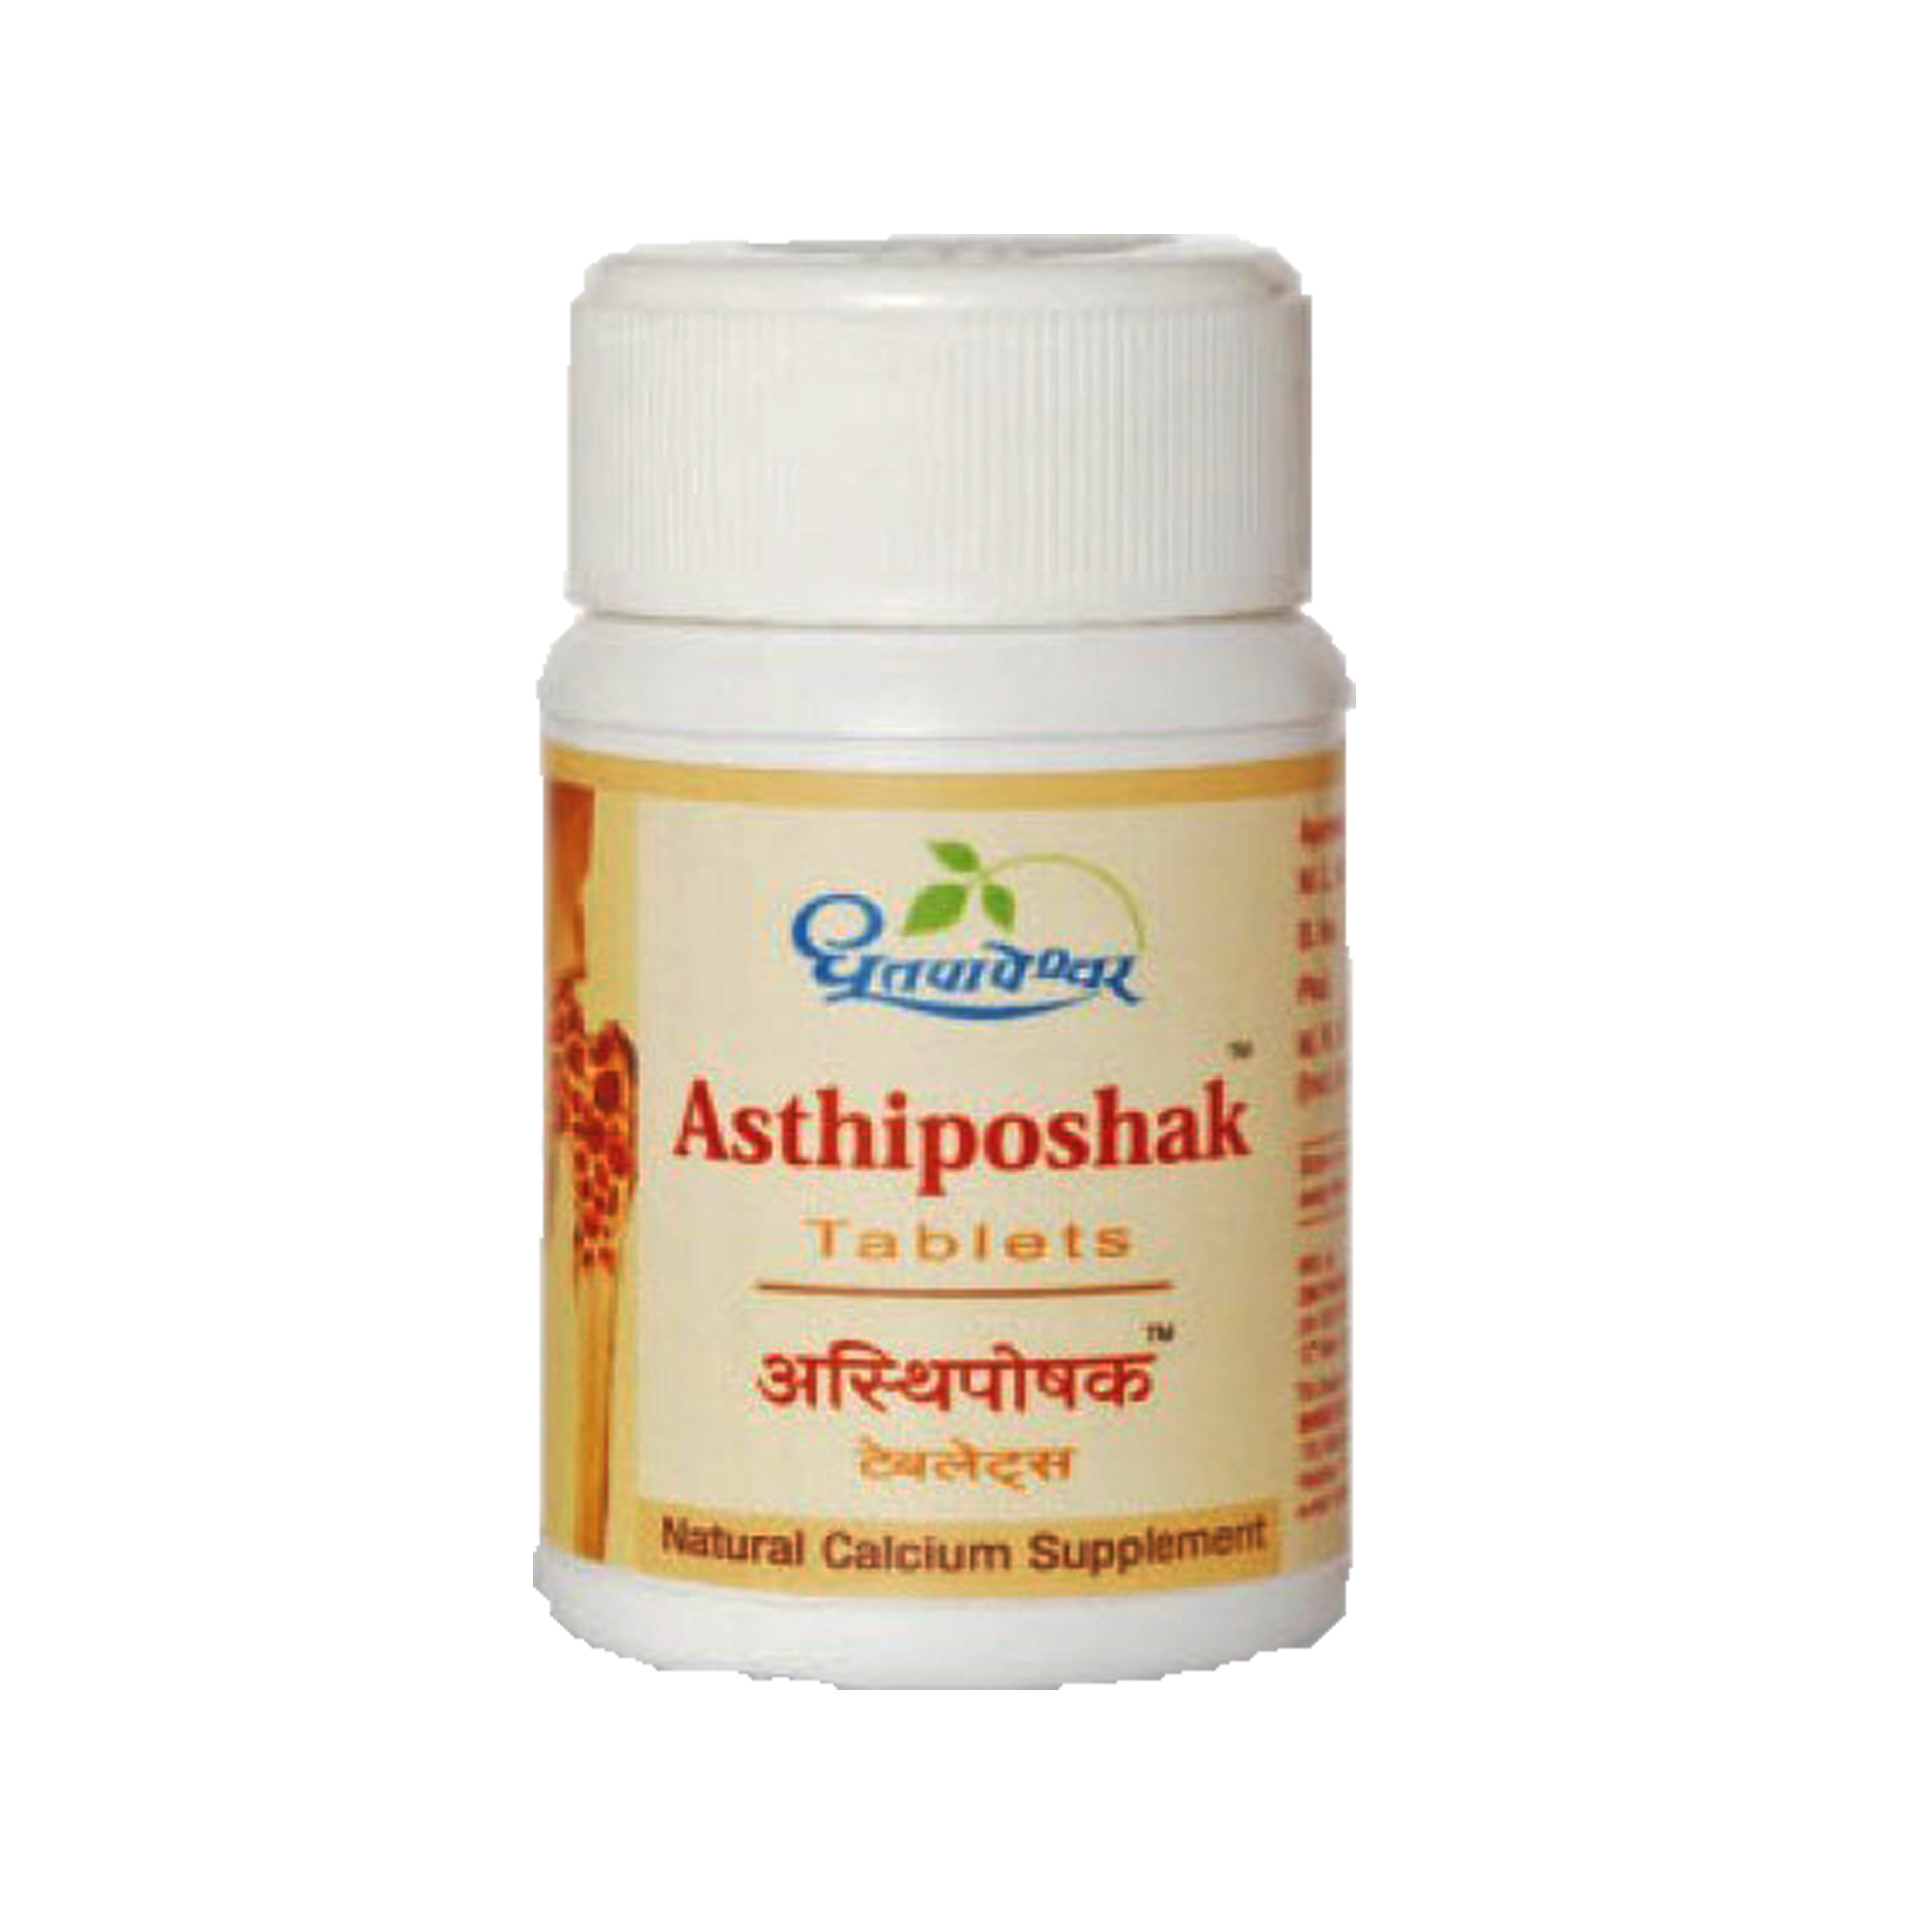 Buy Dhootapapeshwar Asthiposhak Tablet at Best Price Online